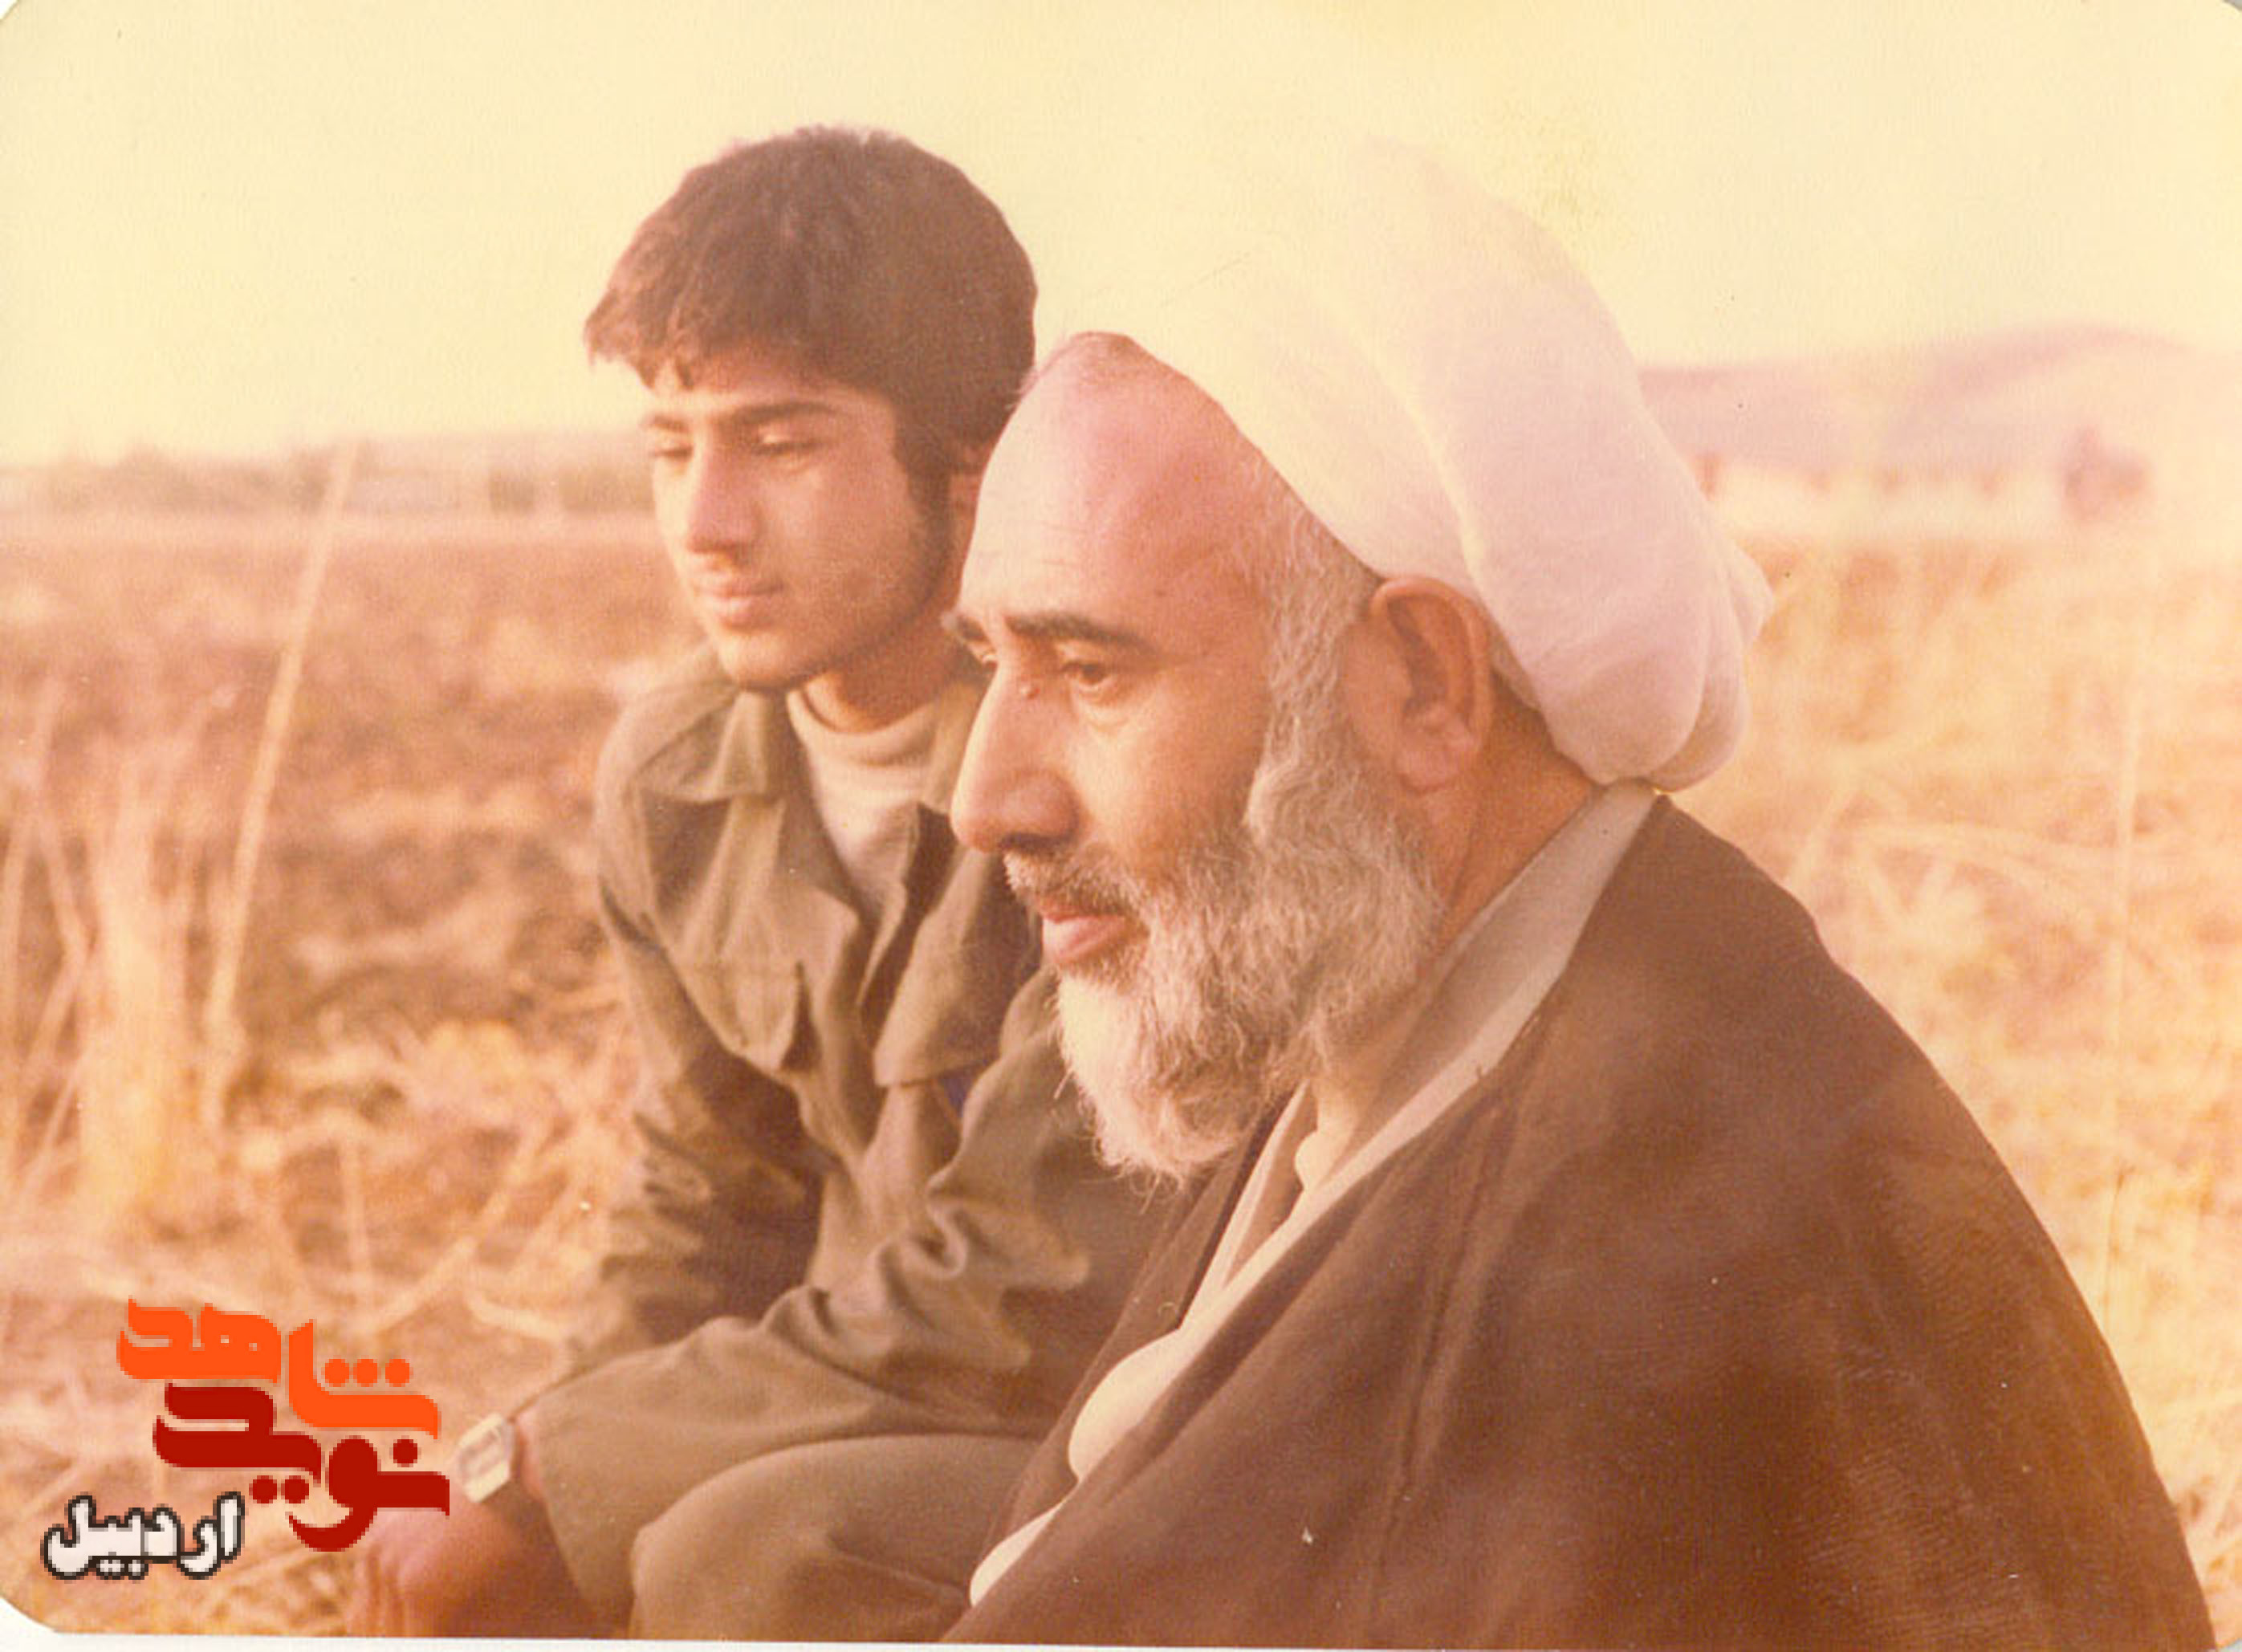 آلبوم تصاویر برادران شهید، مرتضی و مصطفی فخرذاکر